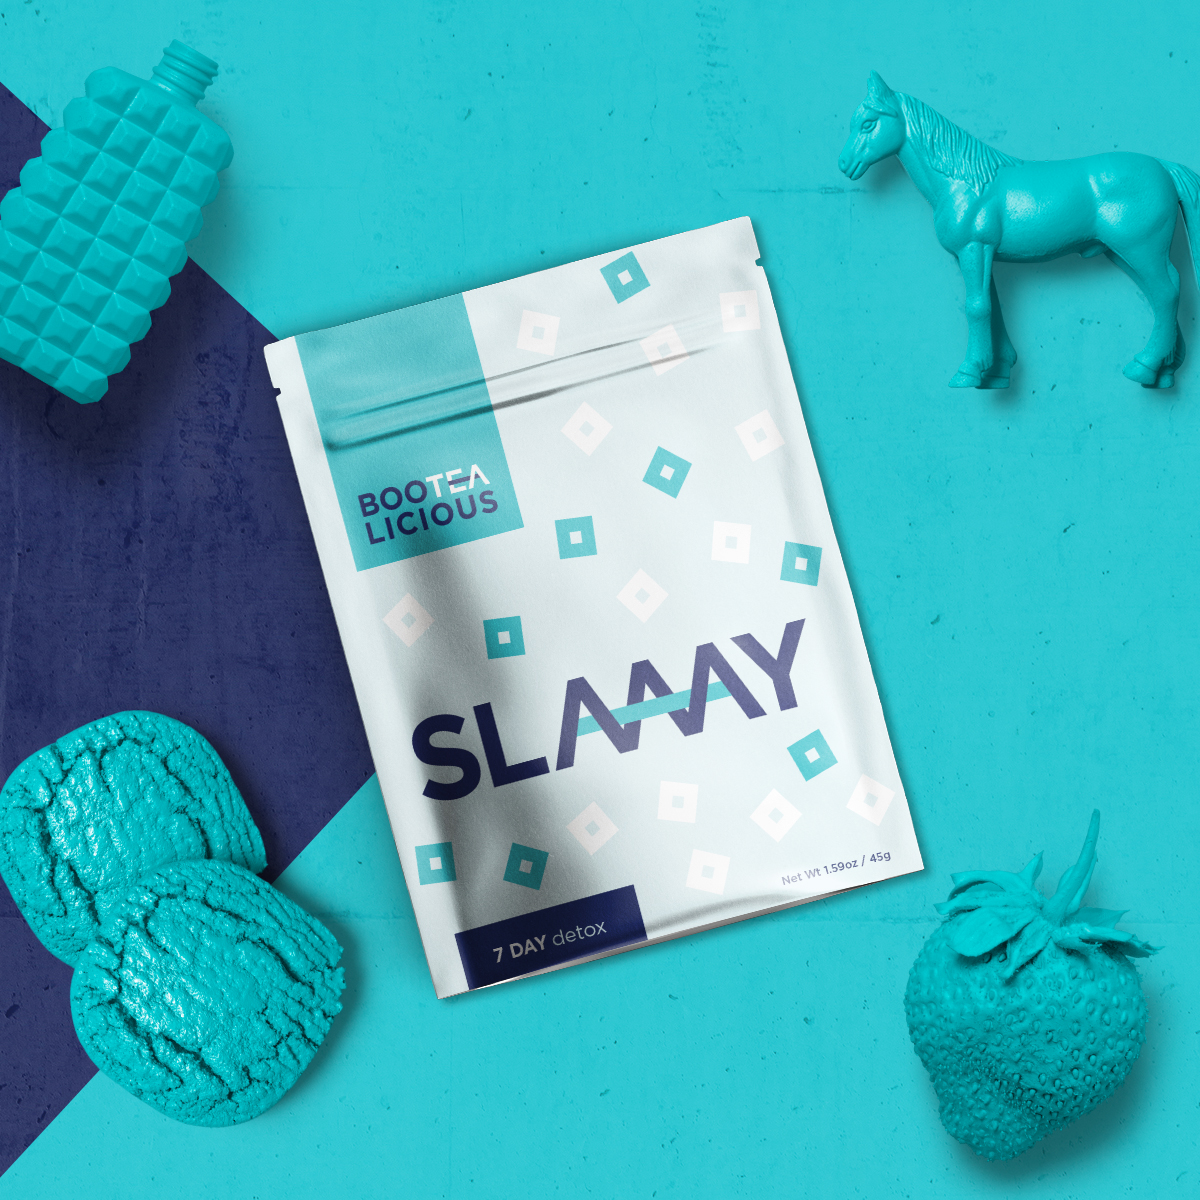 Slaaay tea packaging flatlay